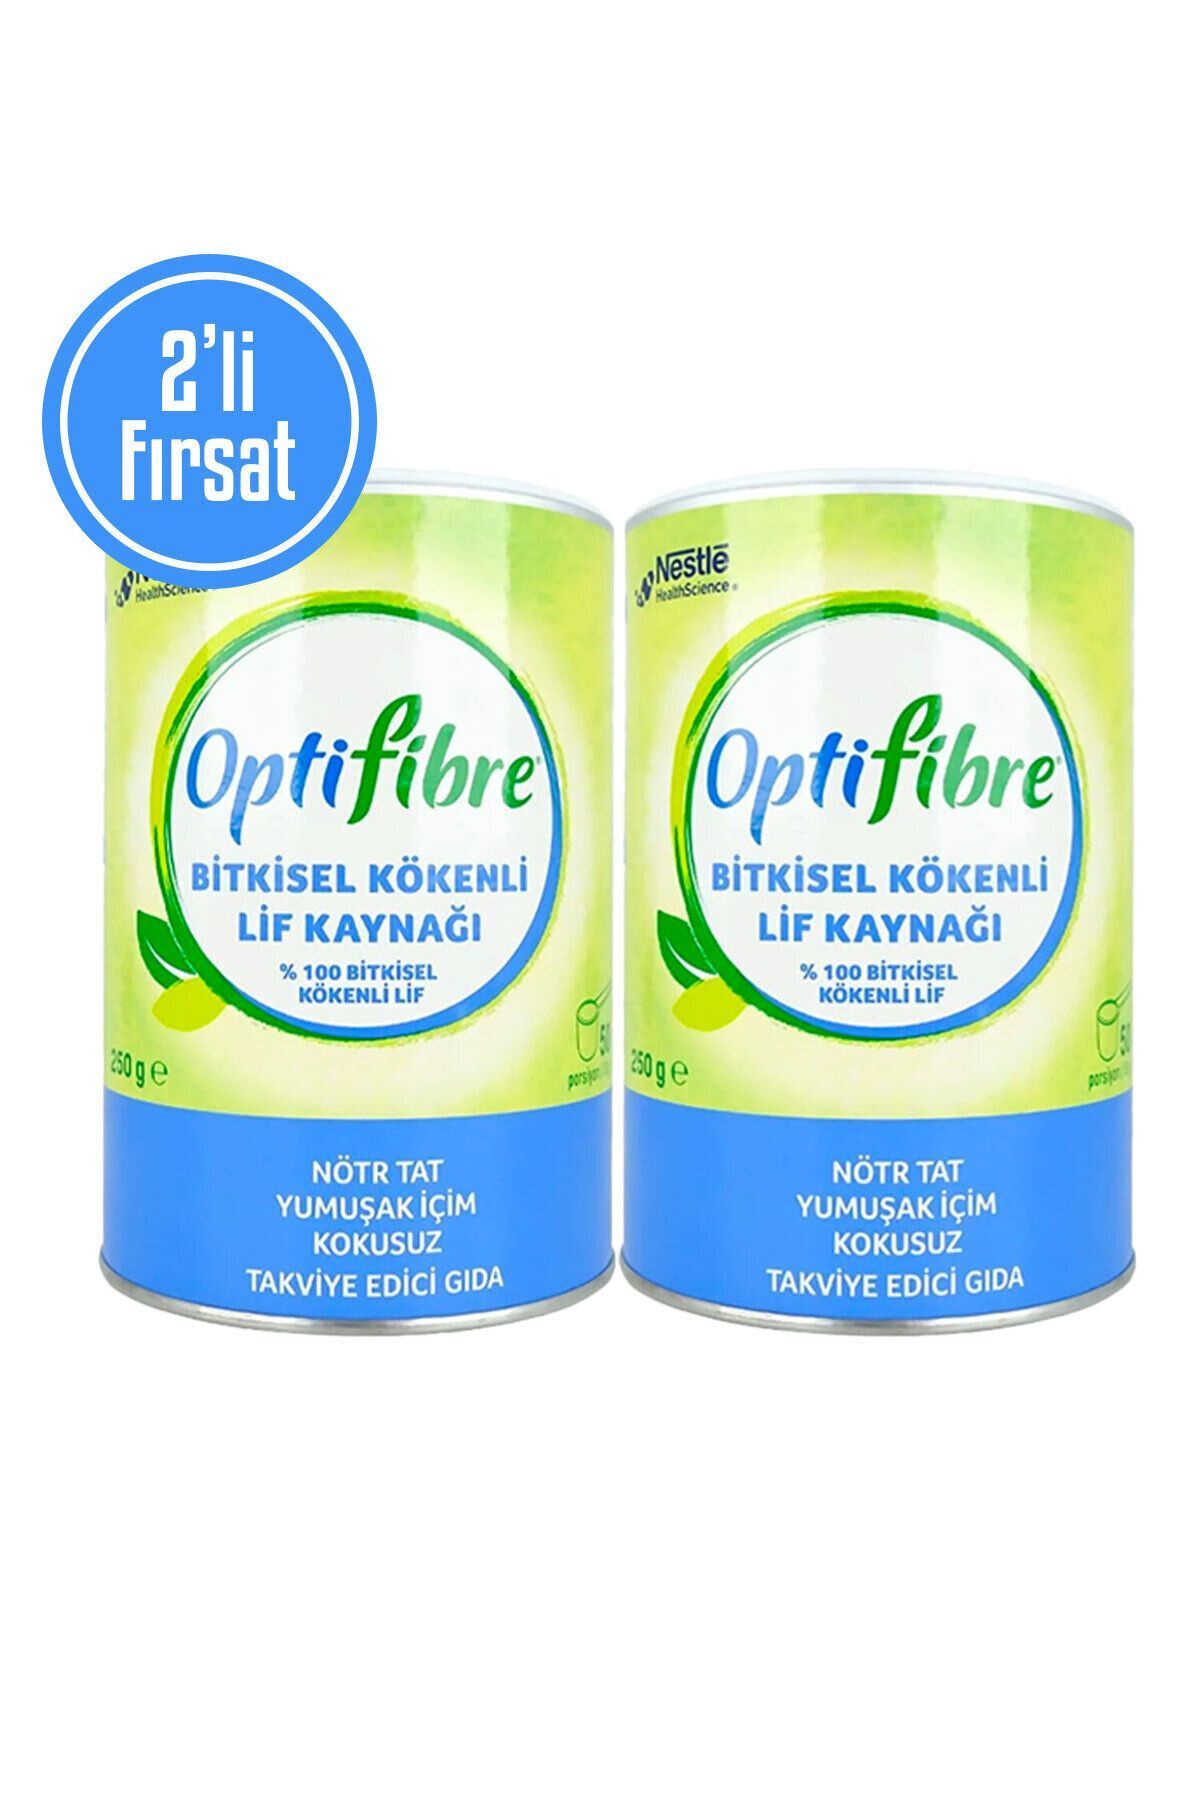 OptiFibre 2'li Fırsat Bitkisel Kökenli Lif Kaynağı Takviye Edici Gıda 250 g